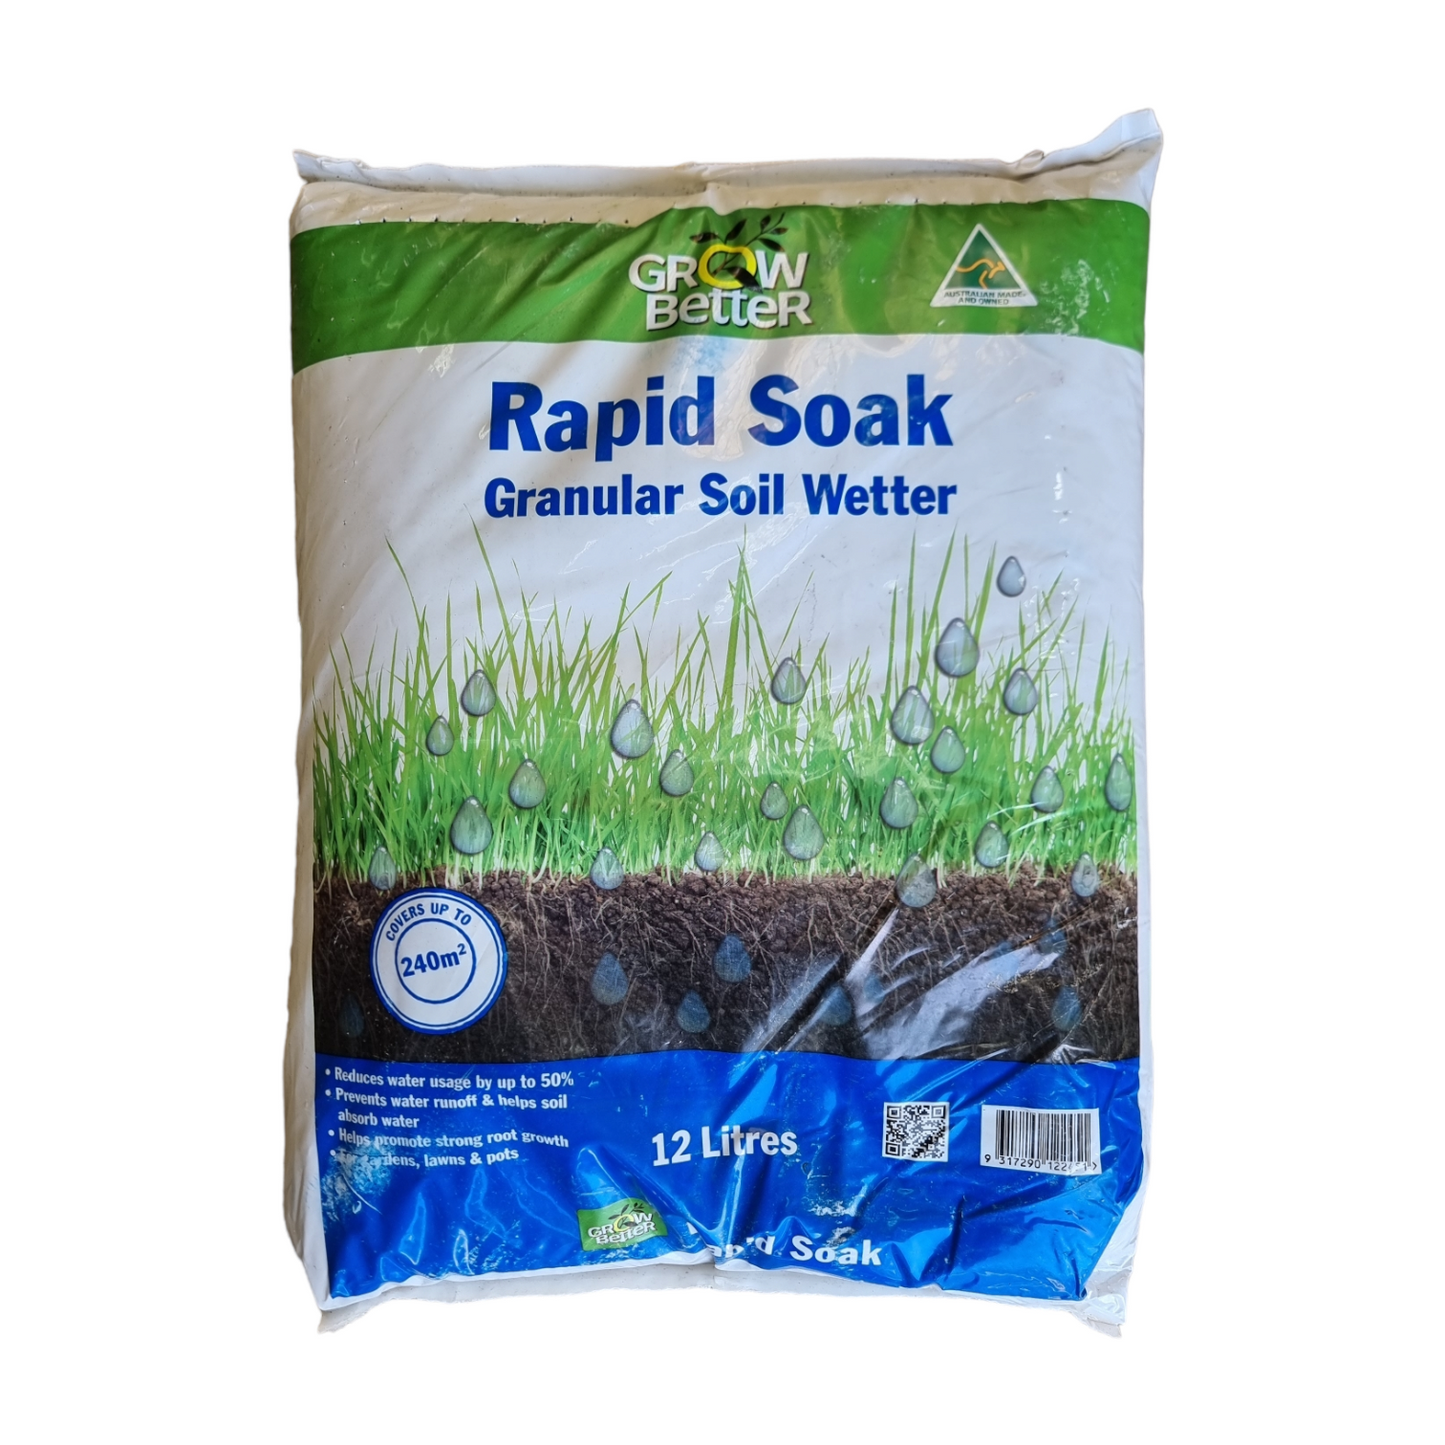 Rapid Soak Granular Soil Wetter 12Lt